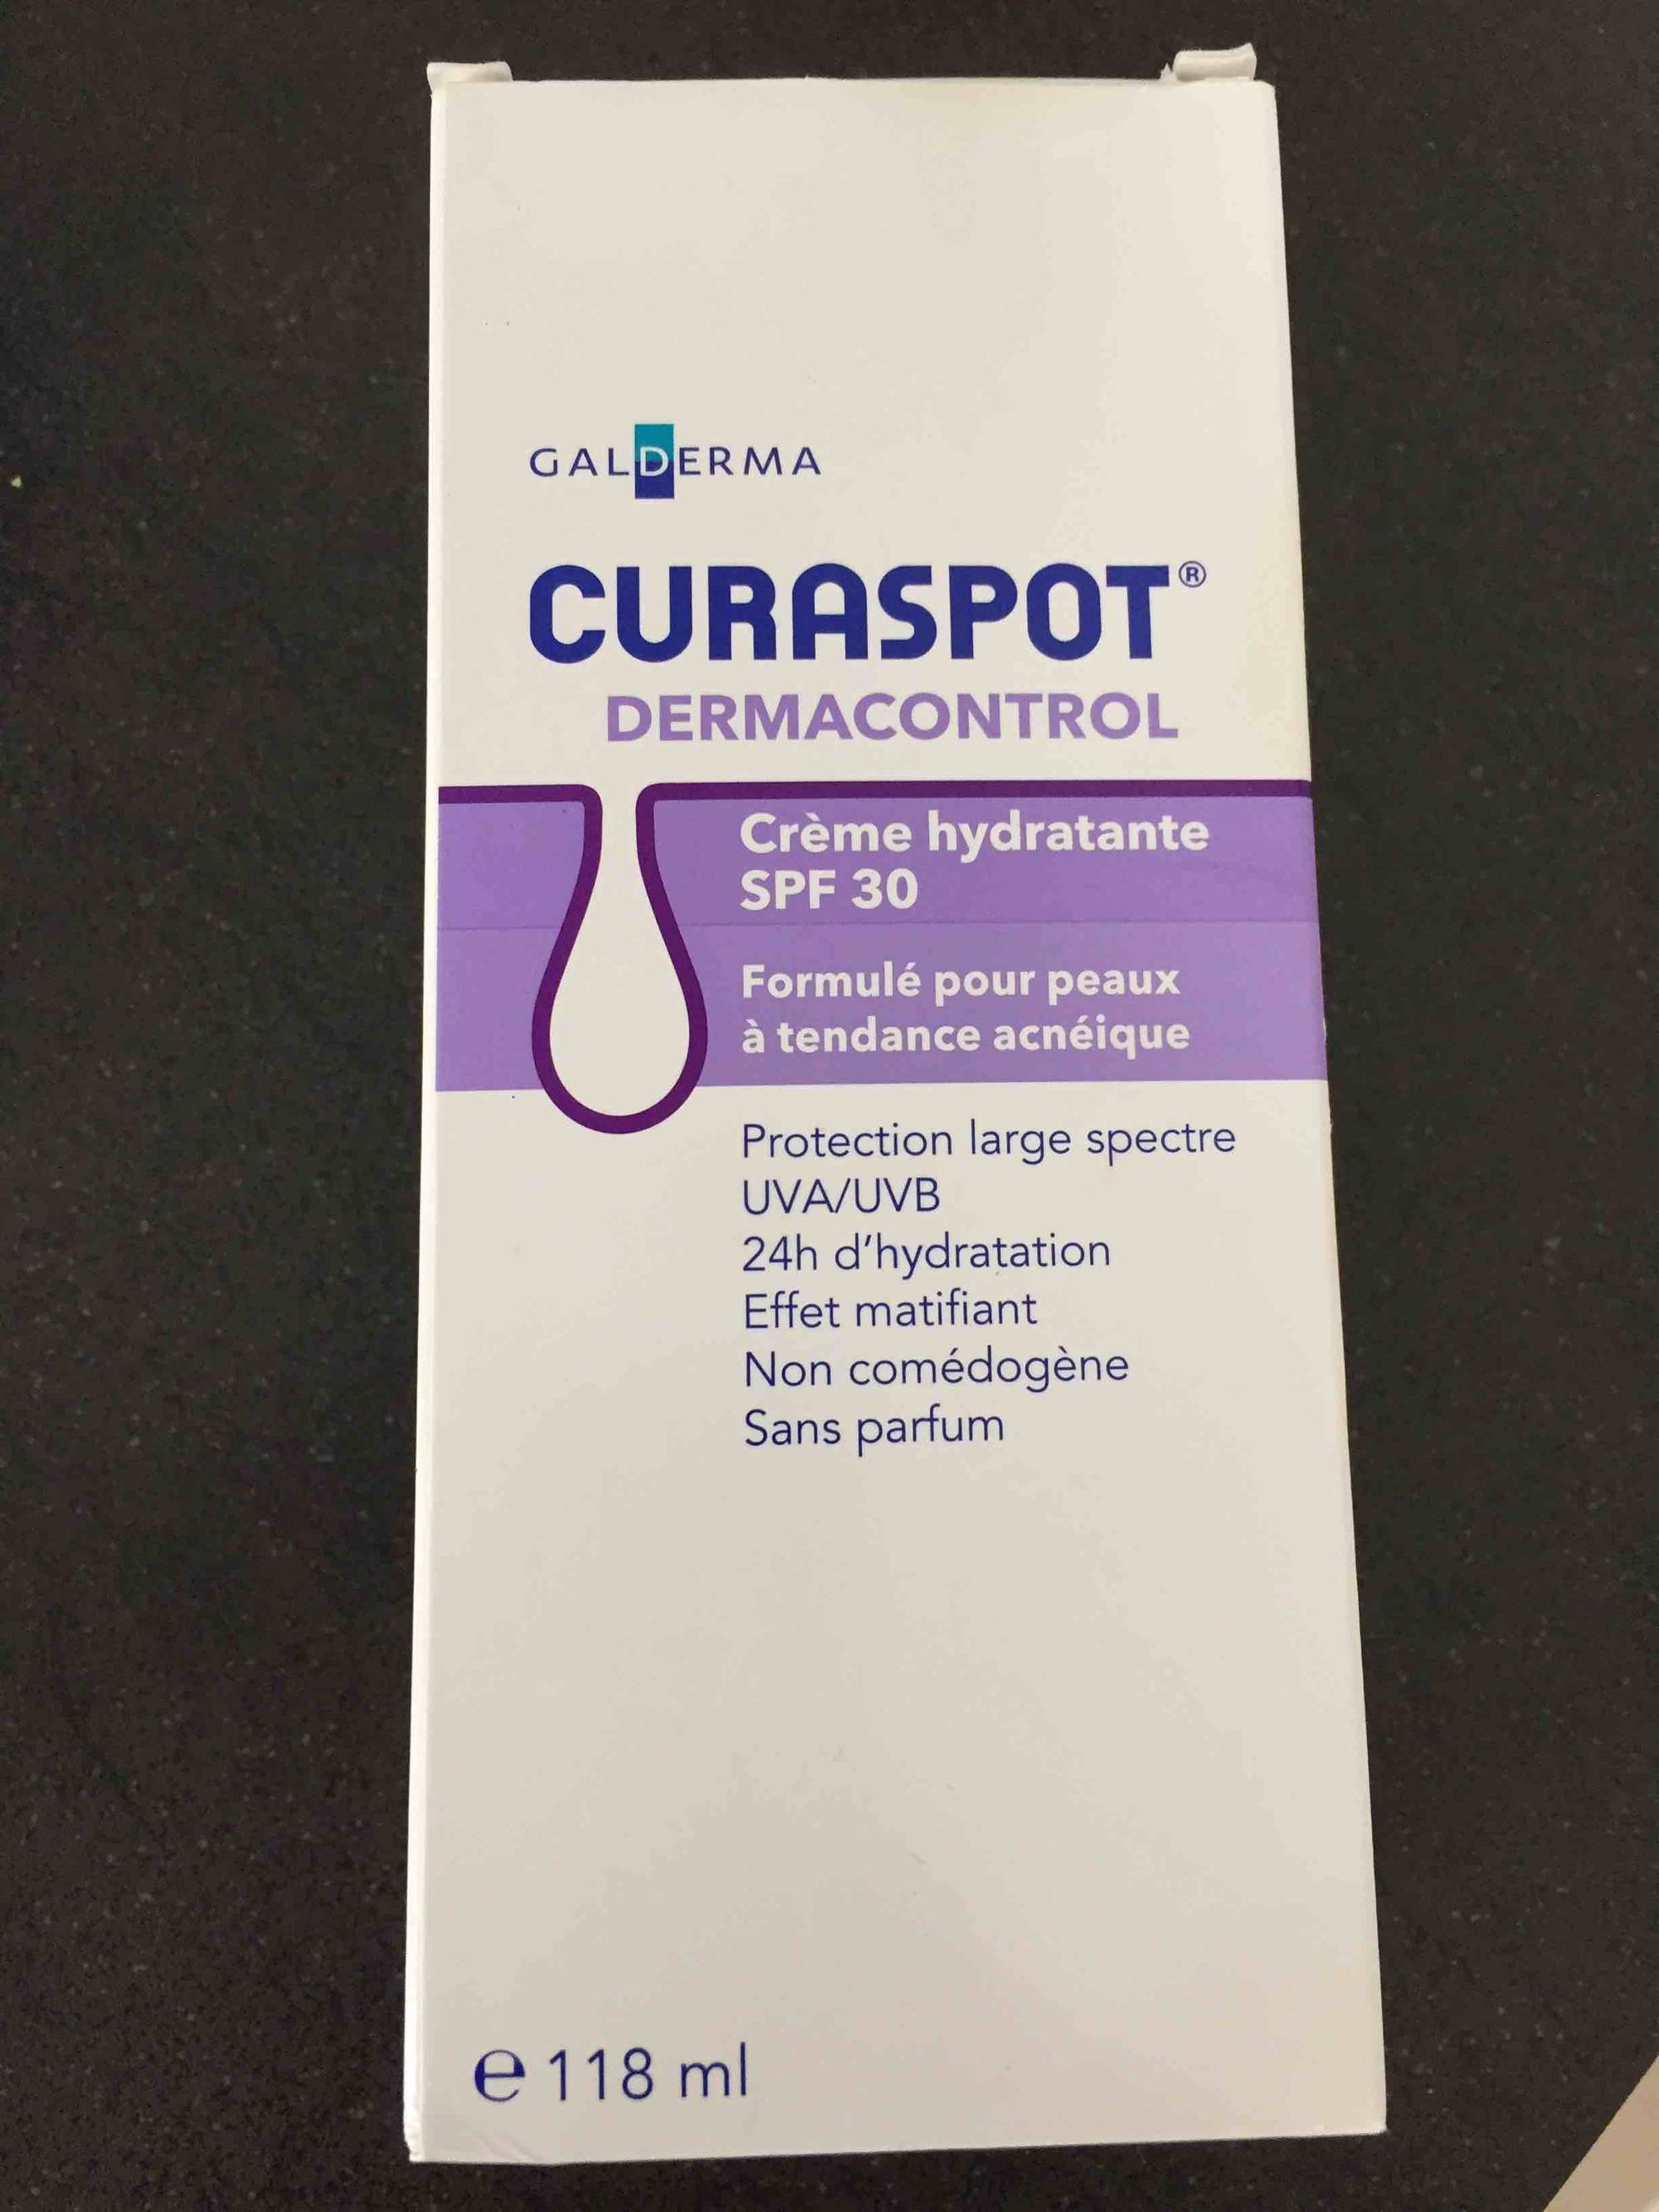 GALDERMA - Curaspot dermacontrol - Crème hydratante SPF 30